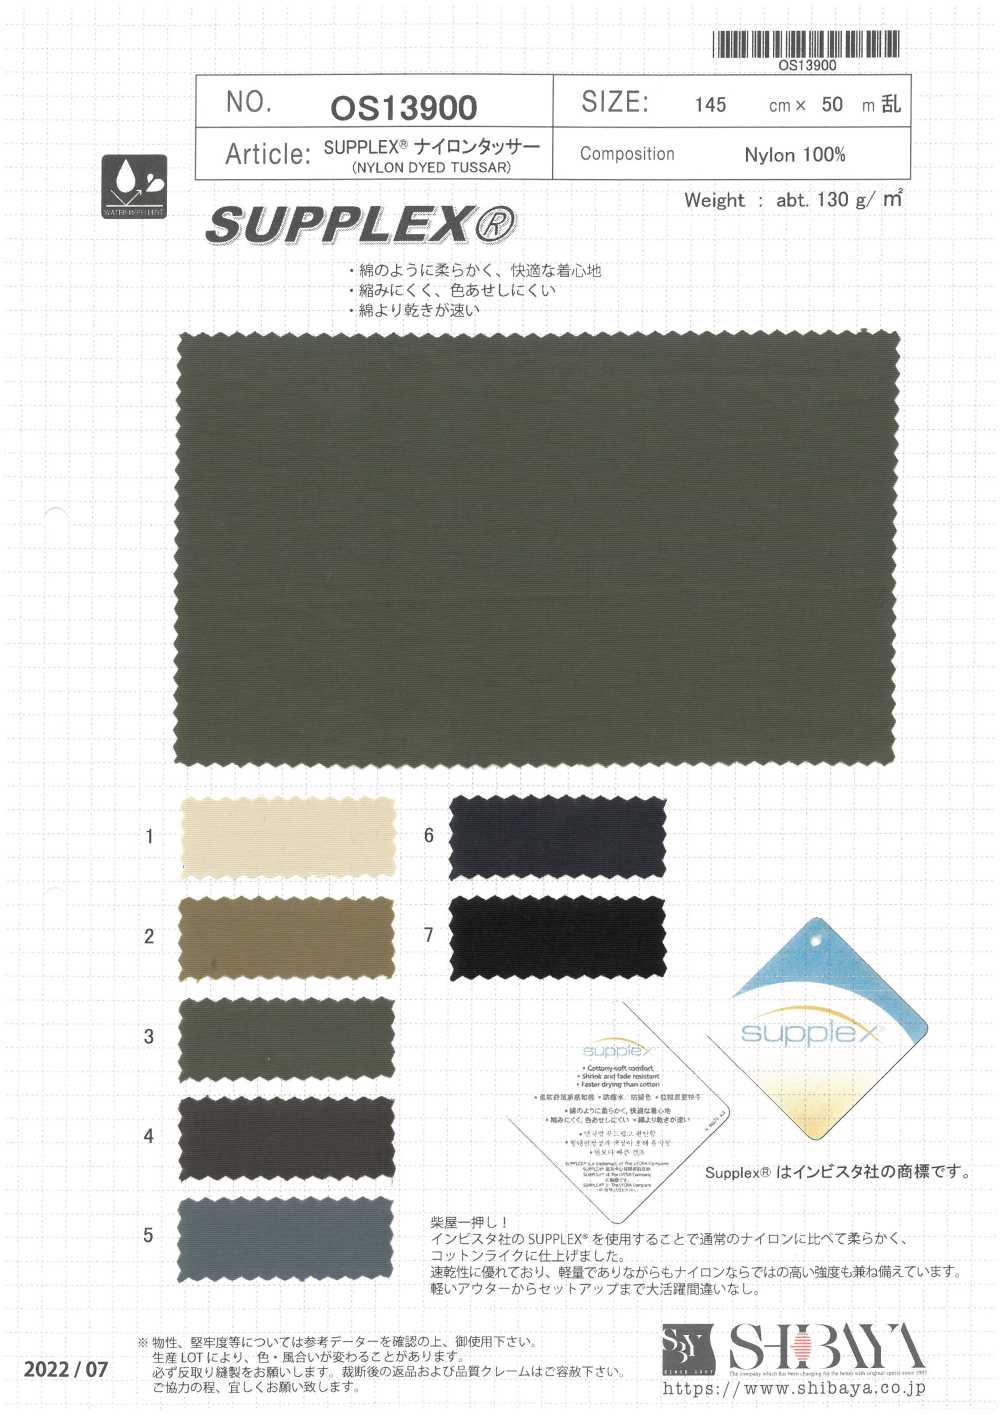 OS13900 Tusar De Nailon SUPPLEX®[Fabrica Textil] SHIBAYA